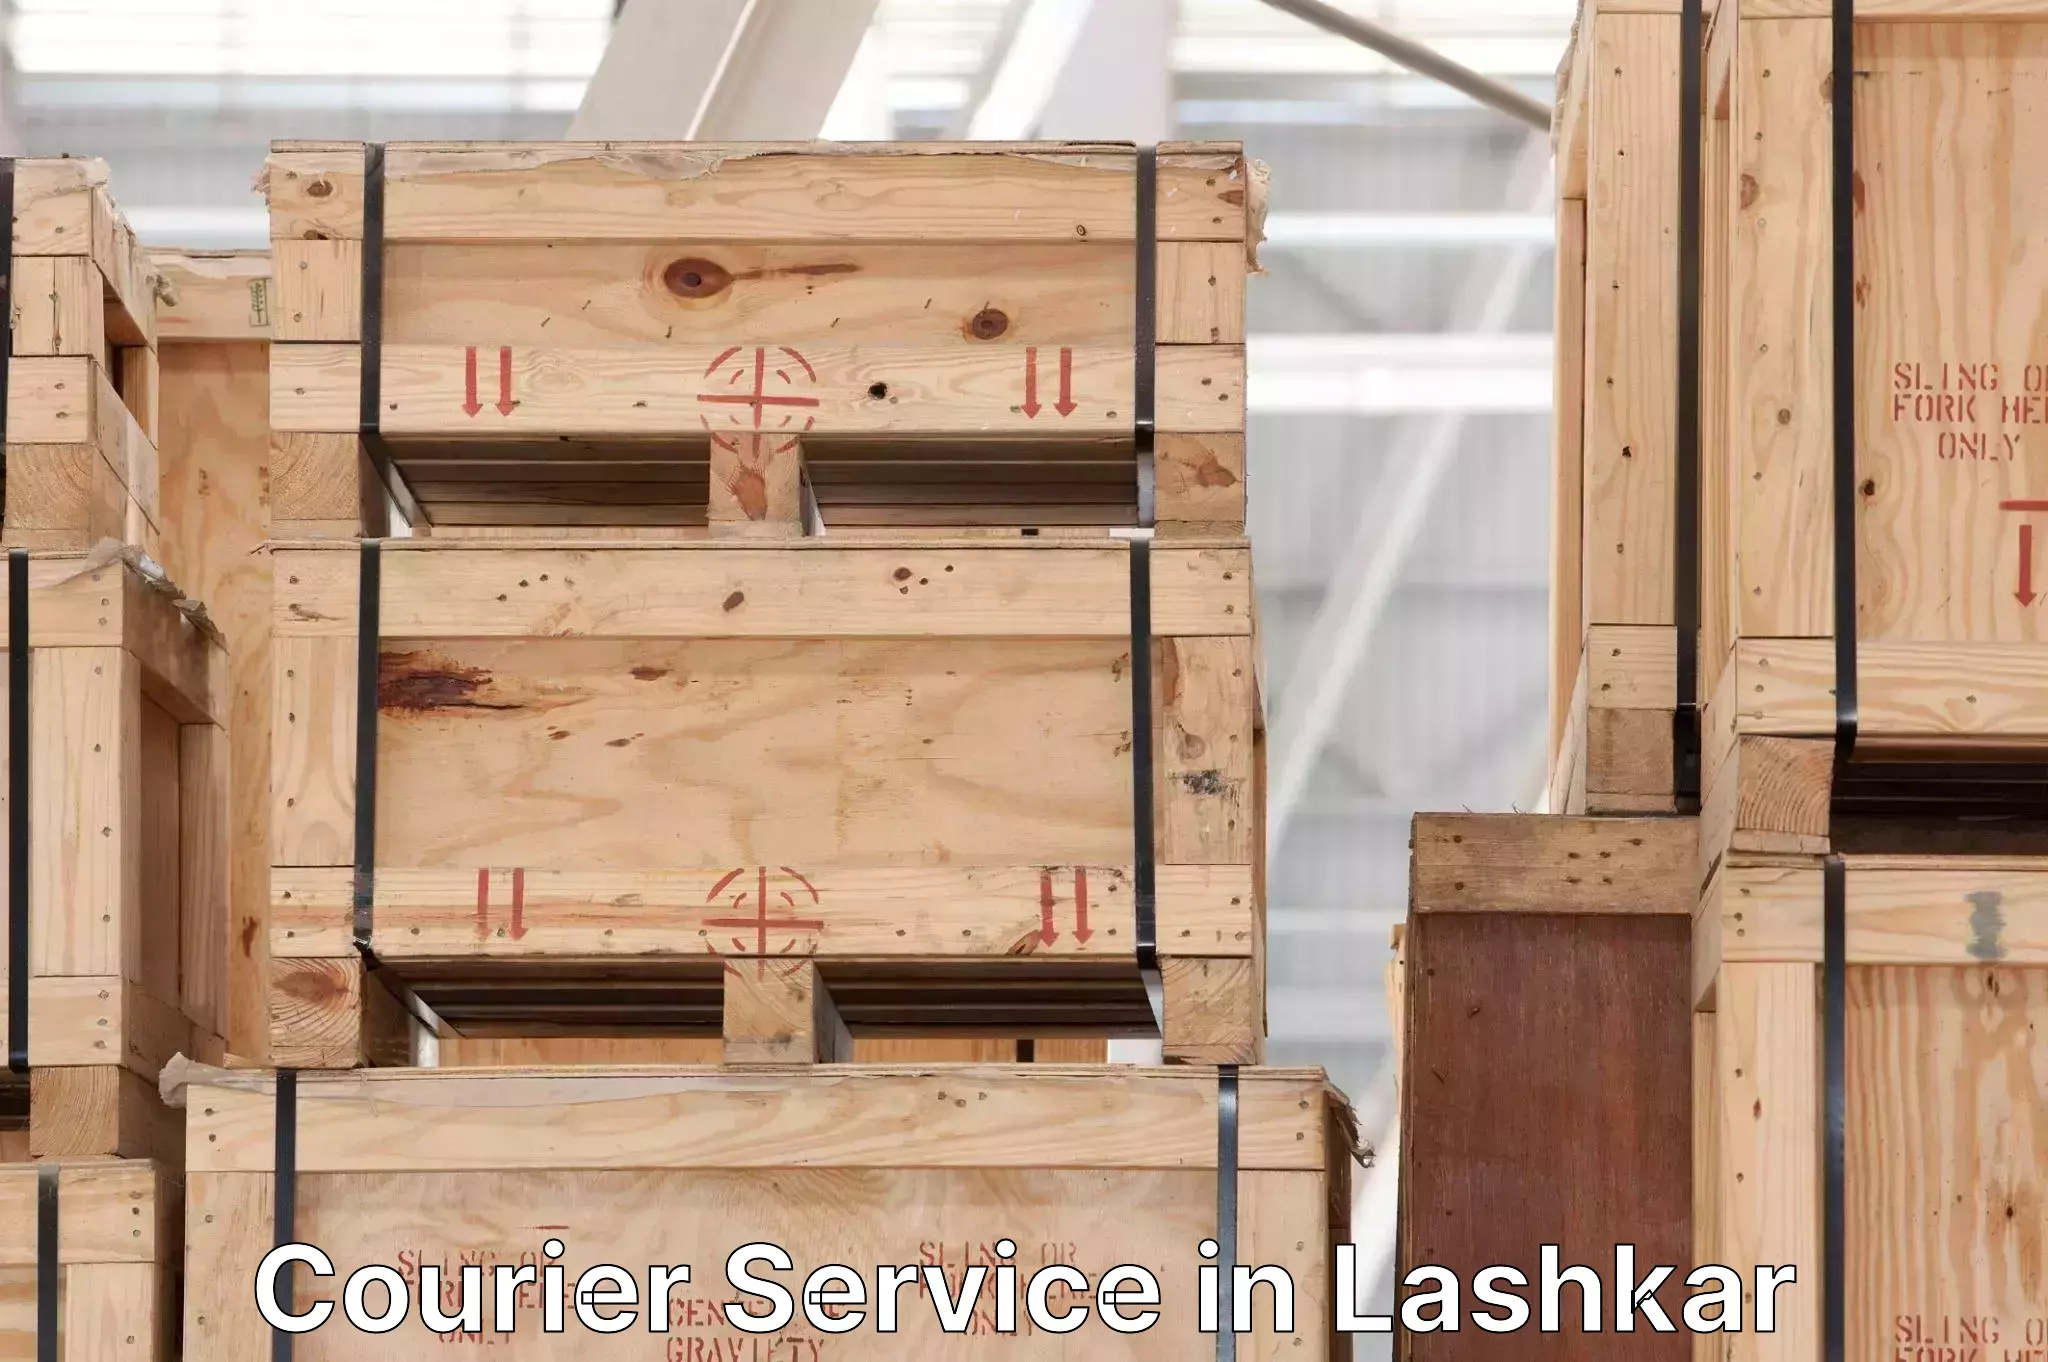 Customizable shipping options in Lashkar